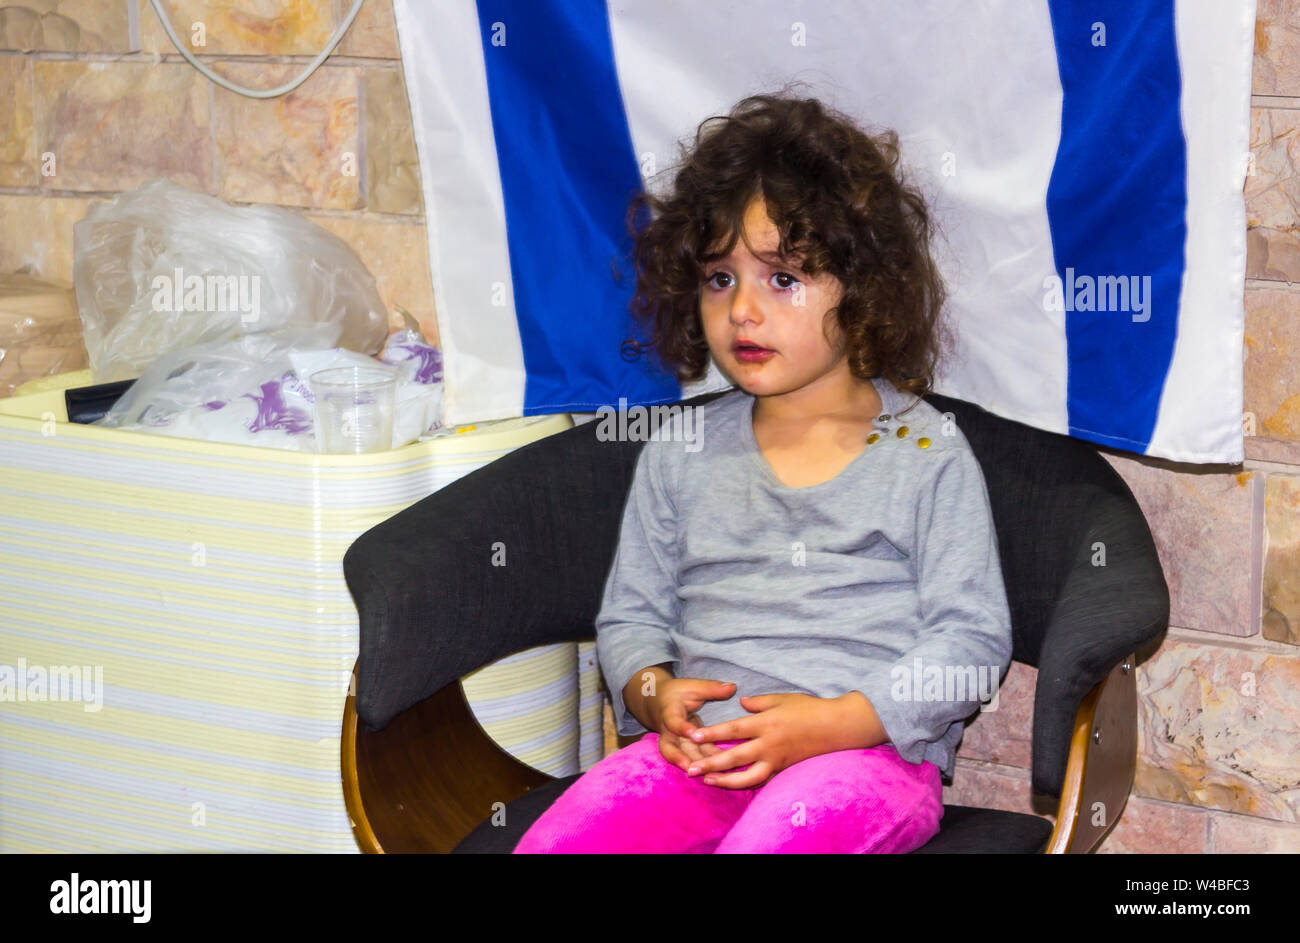 5 maggio 2018 un bel giovane ragazza ebrea si siede tranquillamente nella parte anteriore di una bandiera israeliana come i suoi genitori per assistere i clienti nel loro ristorante a Nazareth Foto Stock